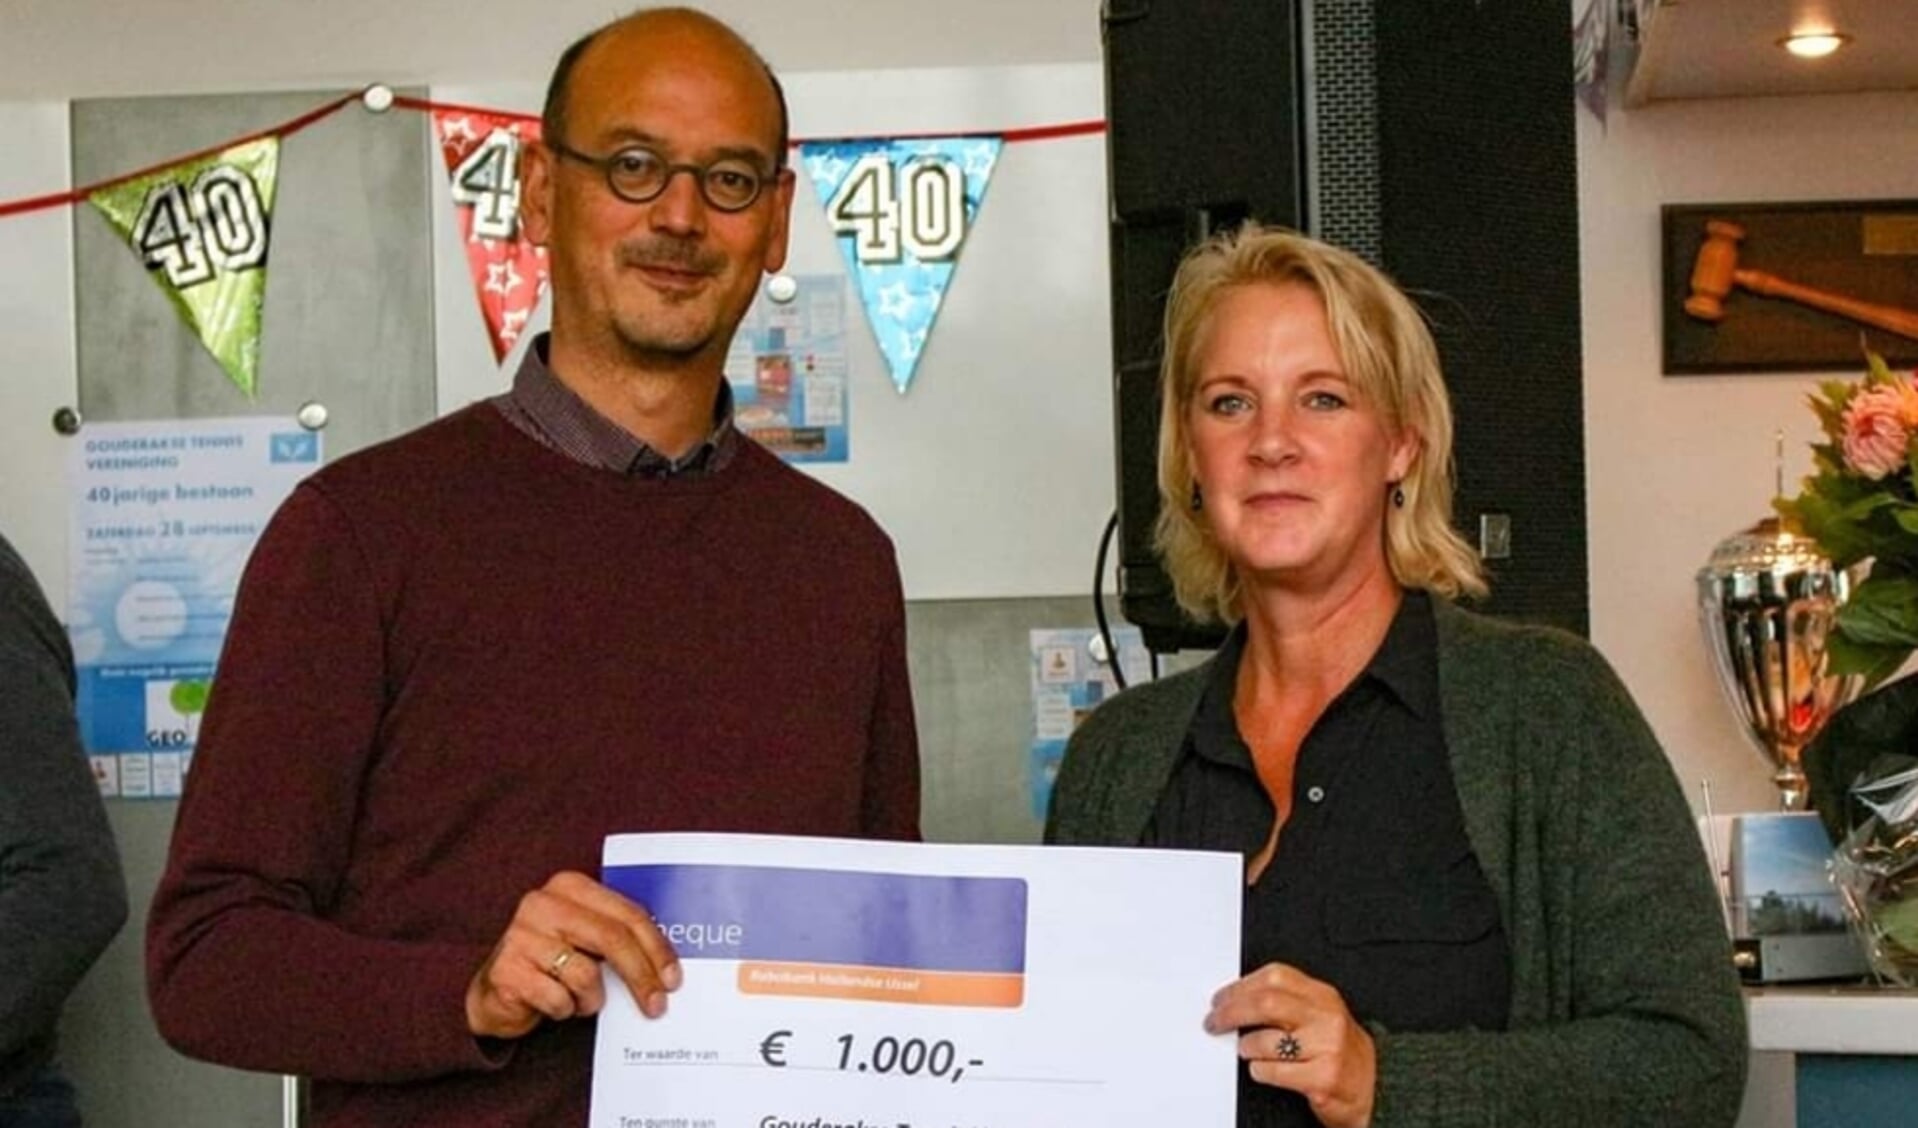 • Ingmar Kim overhandigt namens Rabobank Krimpenerwaard een cheque van 1.000 euro aan voorzitster Mariska Khargi. 